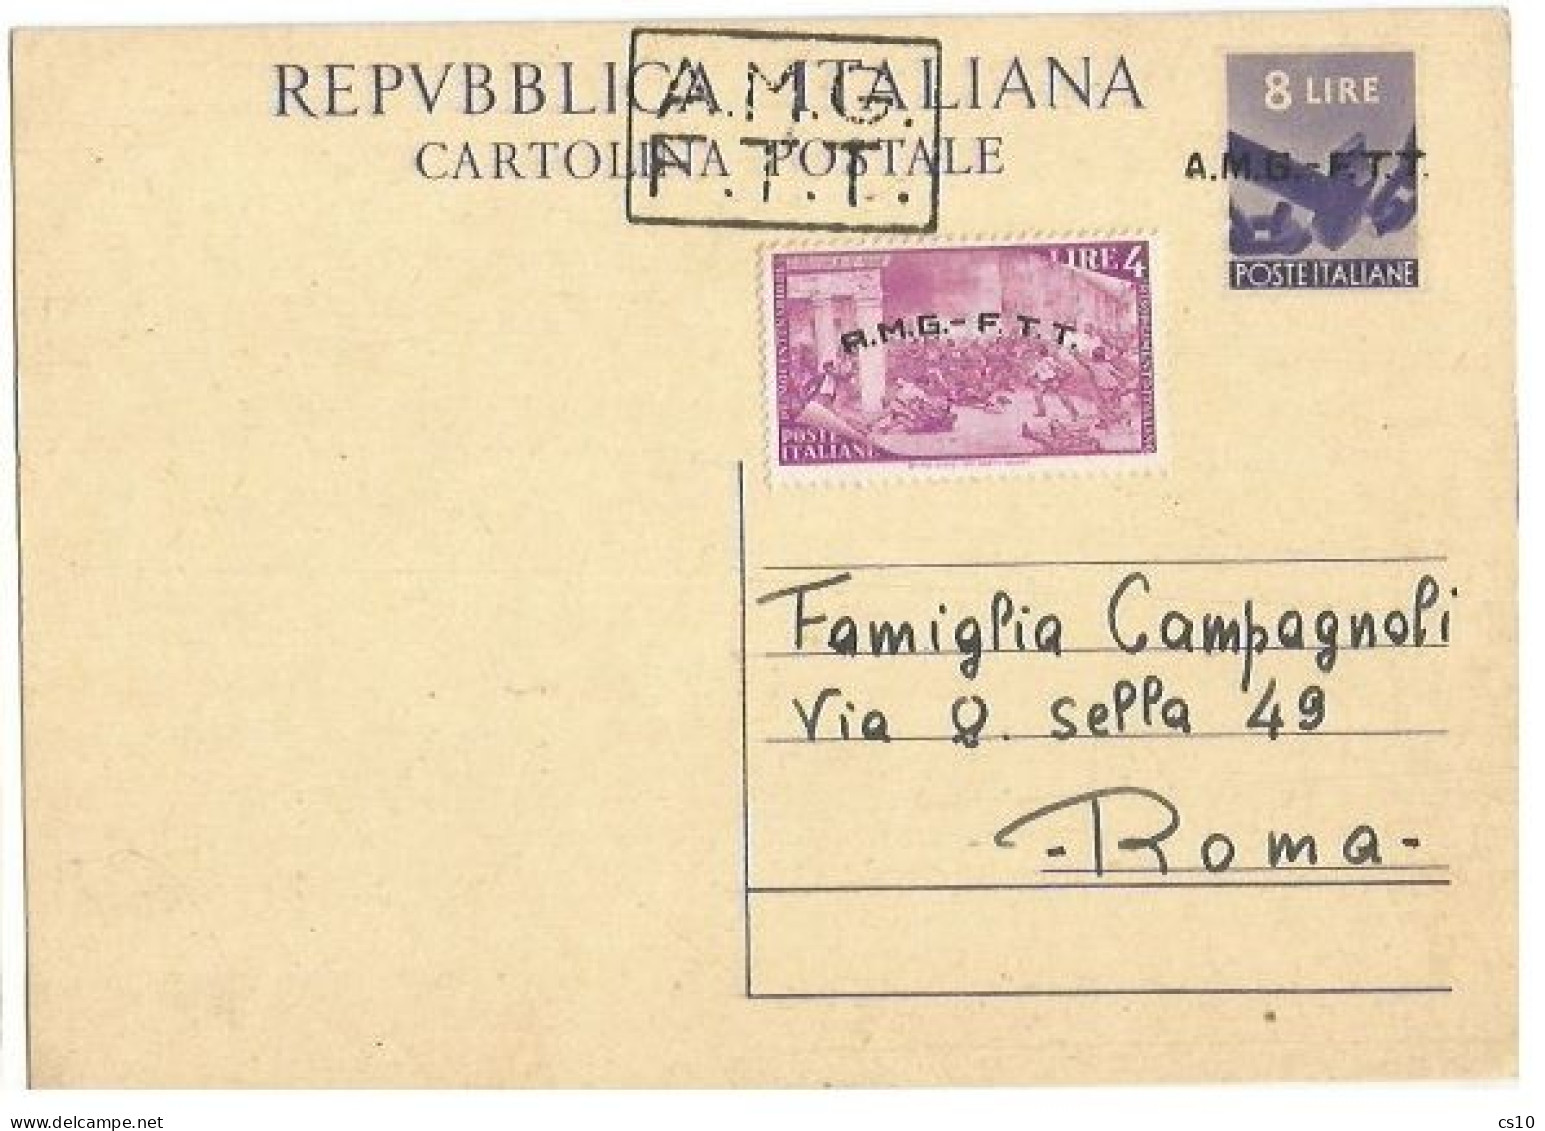 Trieste "A" AMG-FTT 1947 Cart.Postale Democratica L.8 #C2A Soprast.A+B + Risorgimento L.4 Nuova Intestata NON VIAGGIATA - Marcophilia